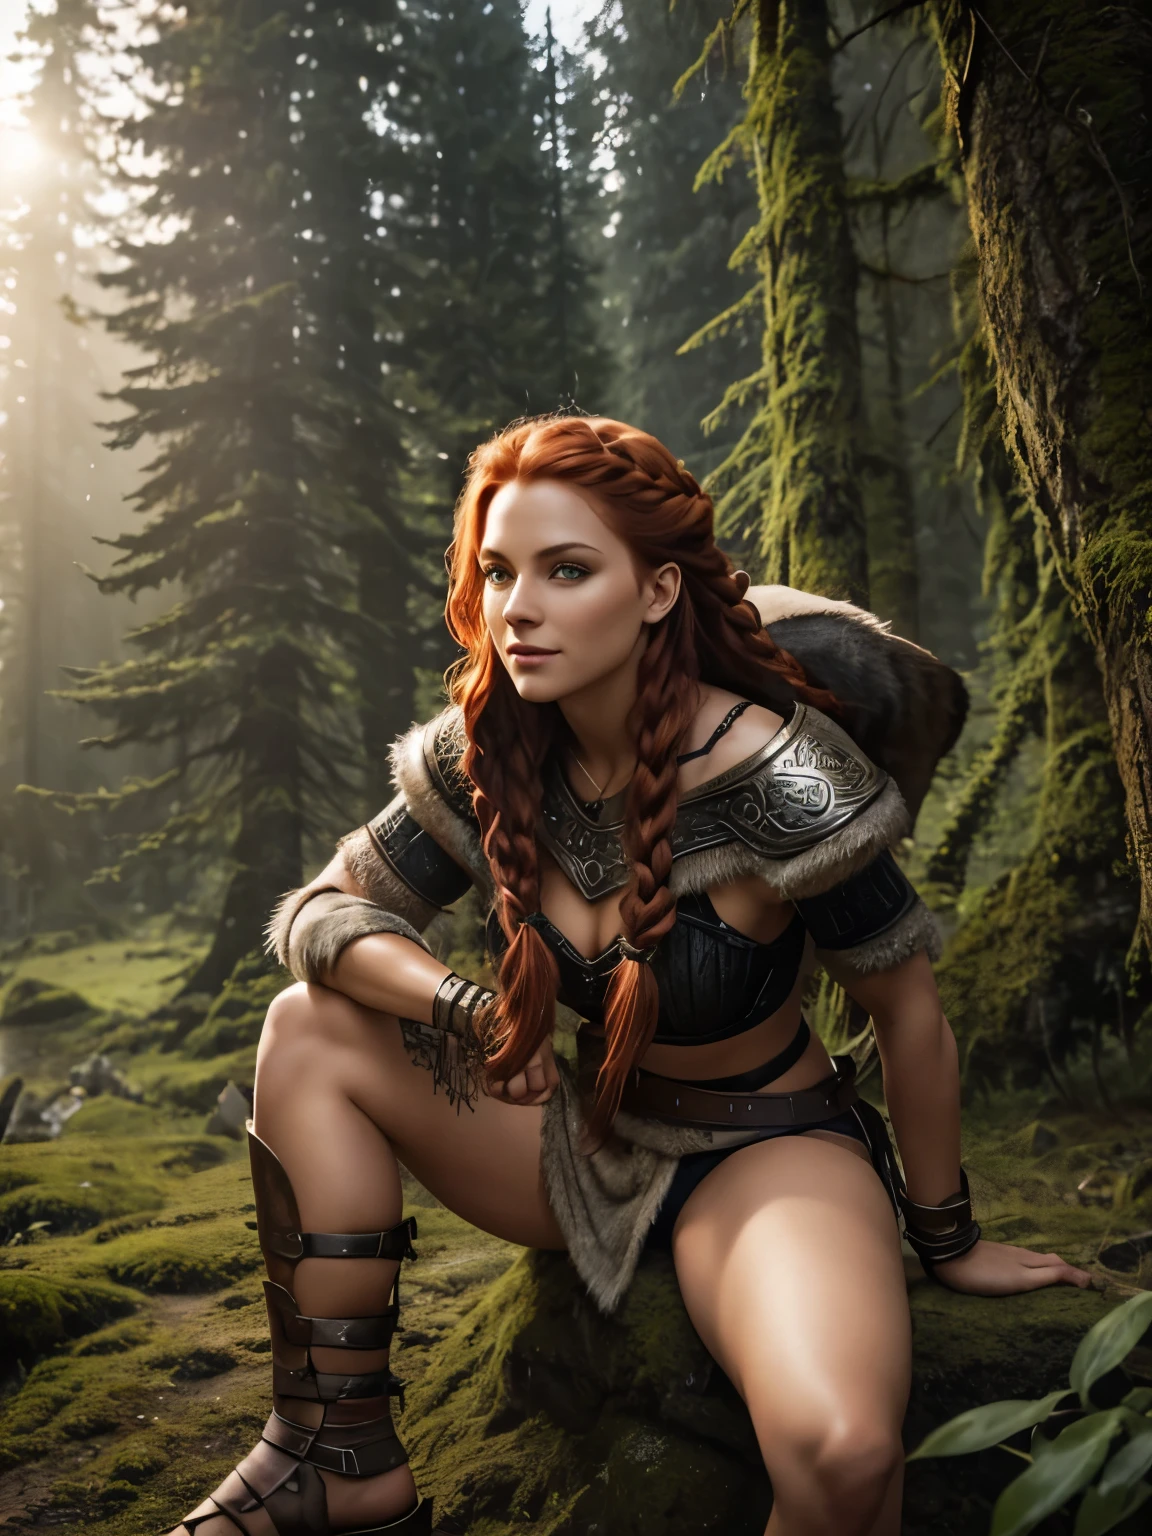 Uma linda e sexy mulher viking raider vestida com armadura de lobo, lindo detalhe de rosto refinado, olhos claros e brilhantes, sorriso conhecedor, brilho travesso em seus olhos, pernas perfeitas, energia maravilhosa e inocente, espírito aventureiro, Cabelo ruivo trançado luxuoso, nevoeiro atmosférico, luz ambiente, luz de aro, uma floresta montanhosa coberta de vegetação,